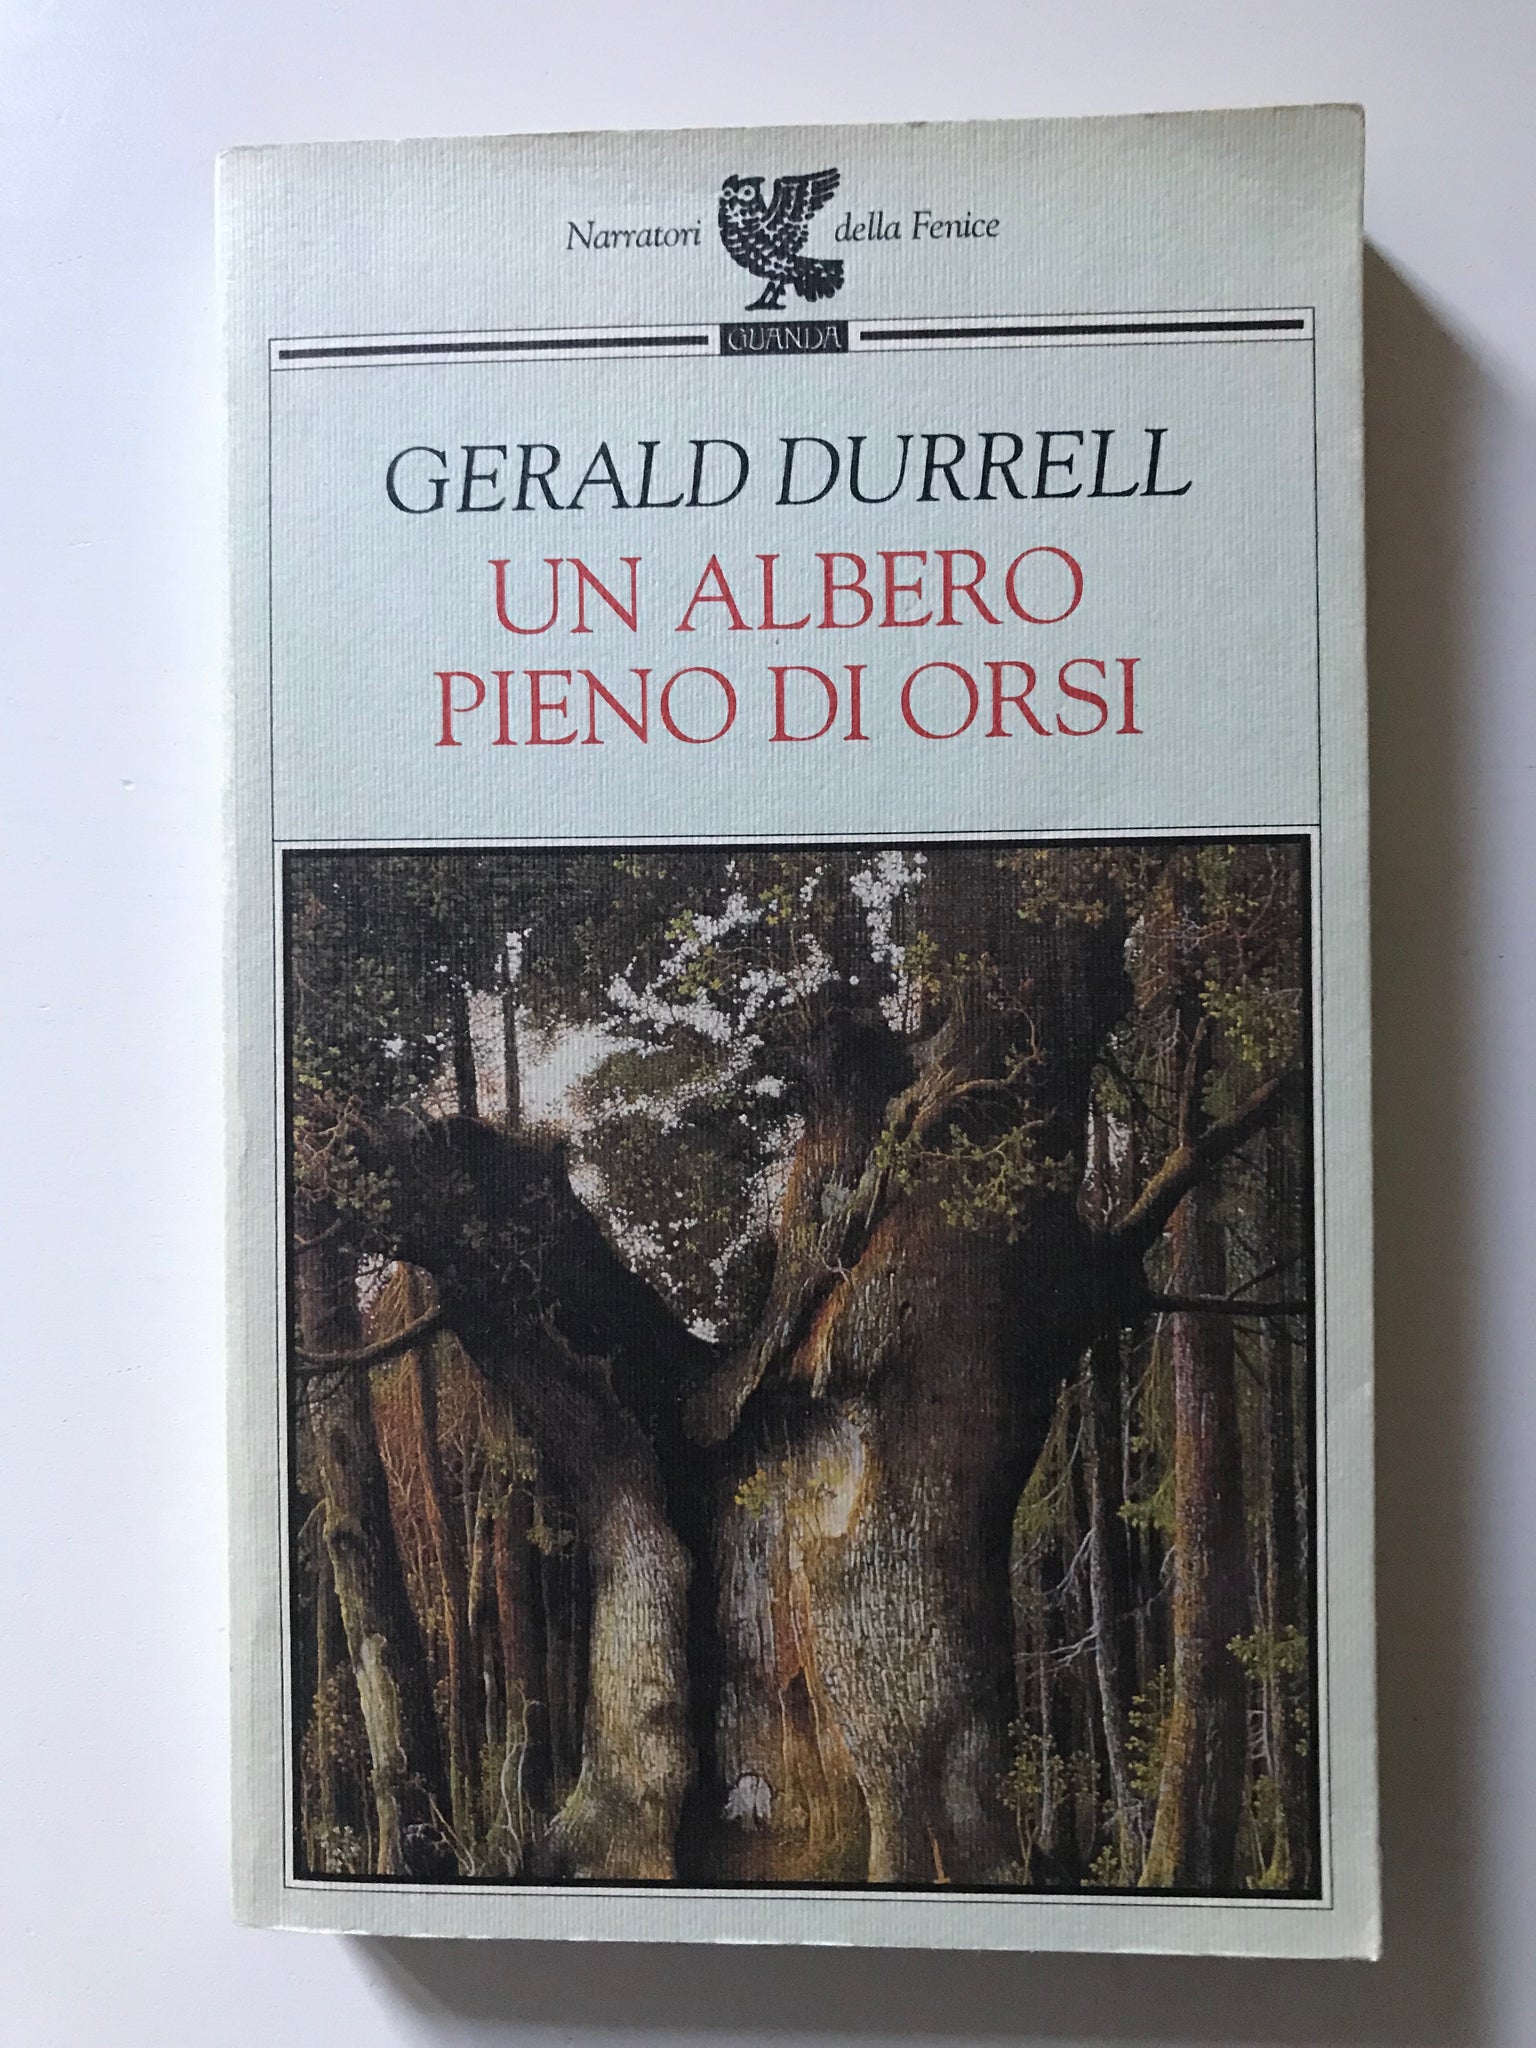 Gerald Durrell - Un albero pieno di orsi